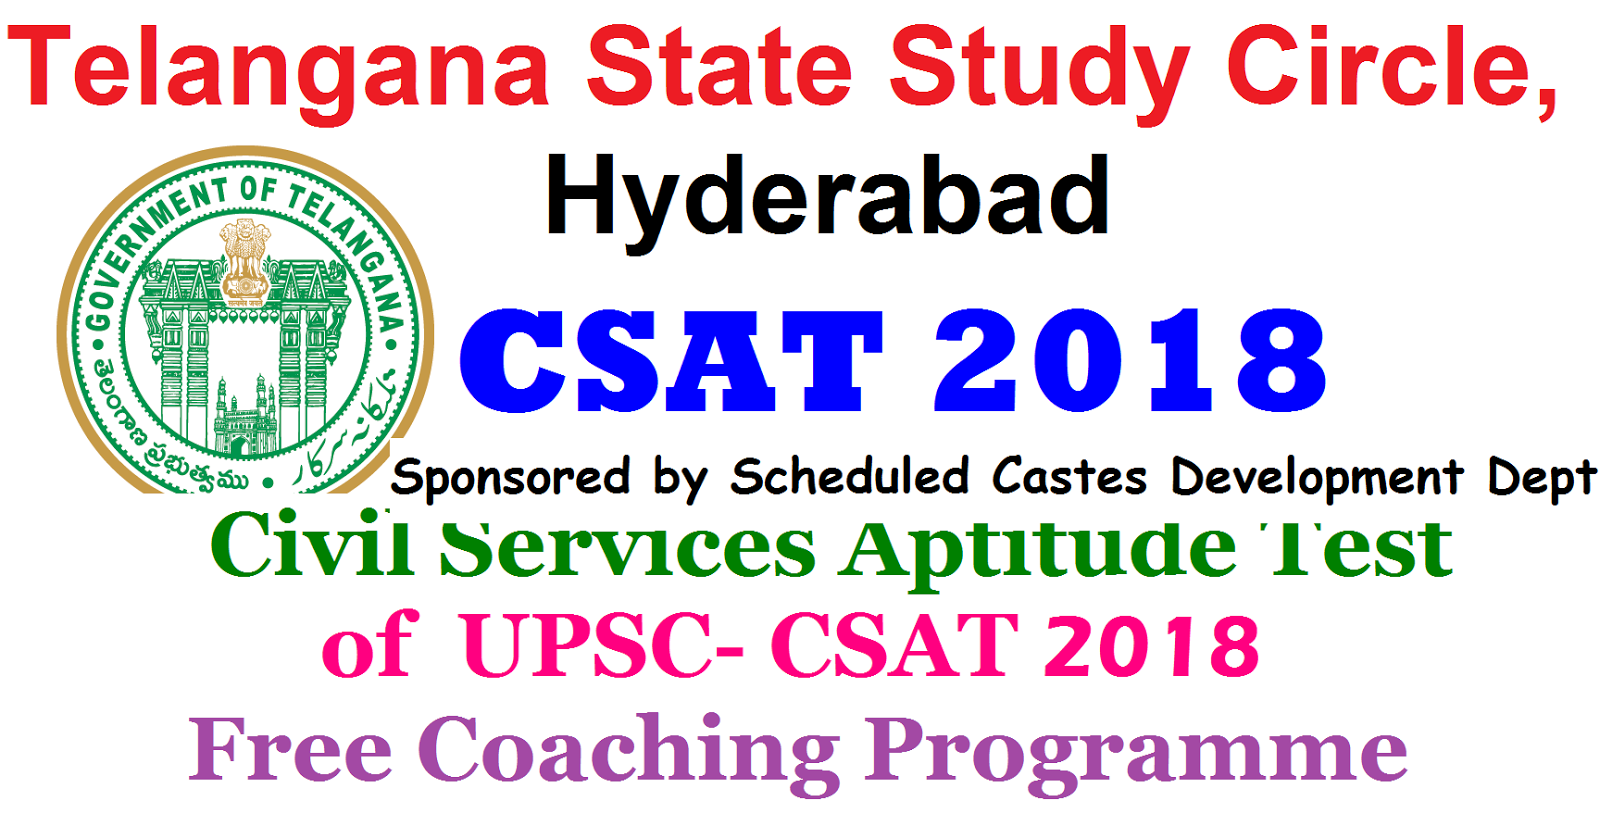 csat-2021-civil-services-aptitude-test-general-studies-paper-2-for-upsc-civil-services